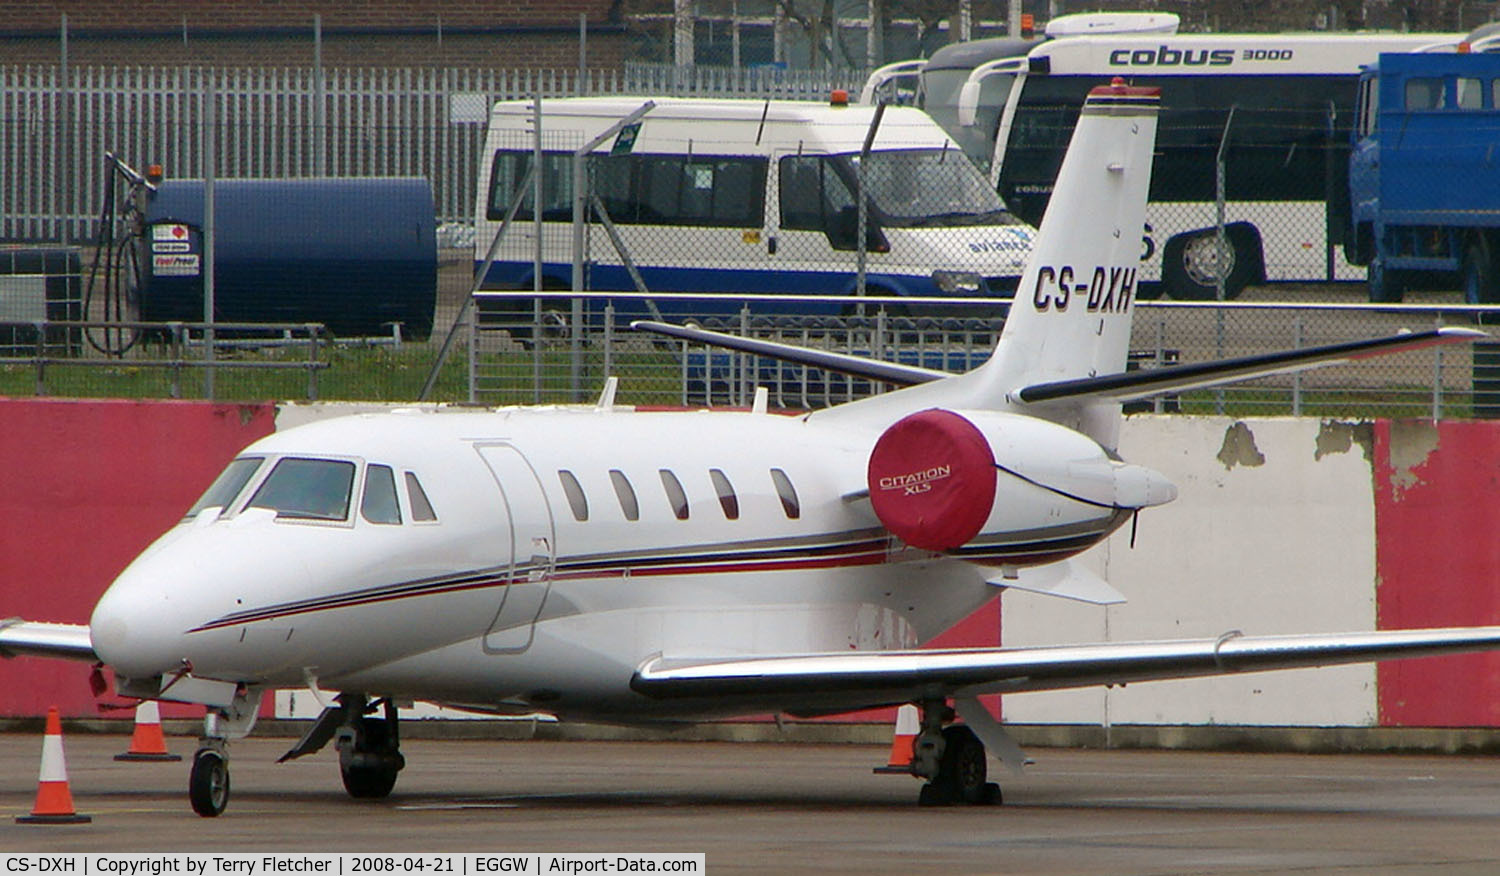 CS-DXH, 2006 Cessna Citation XLS C/N 560-5615, Netjets Europe Citation 560 Excel on Luton Stand 71